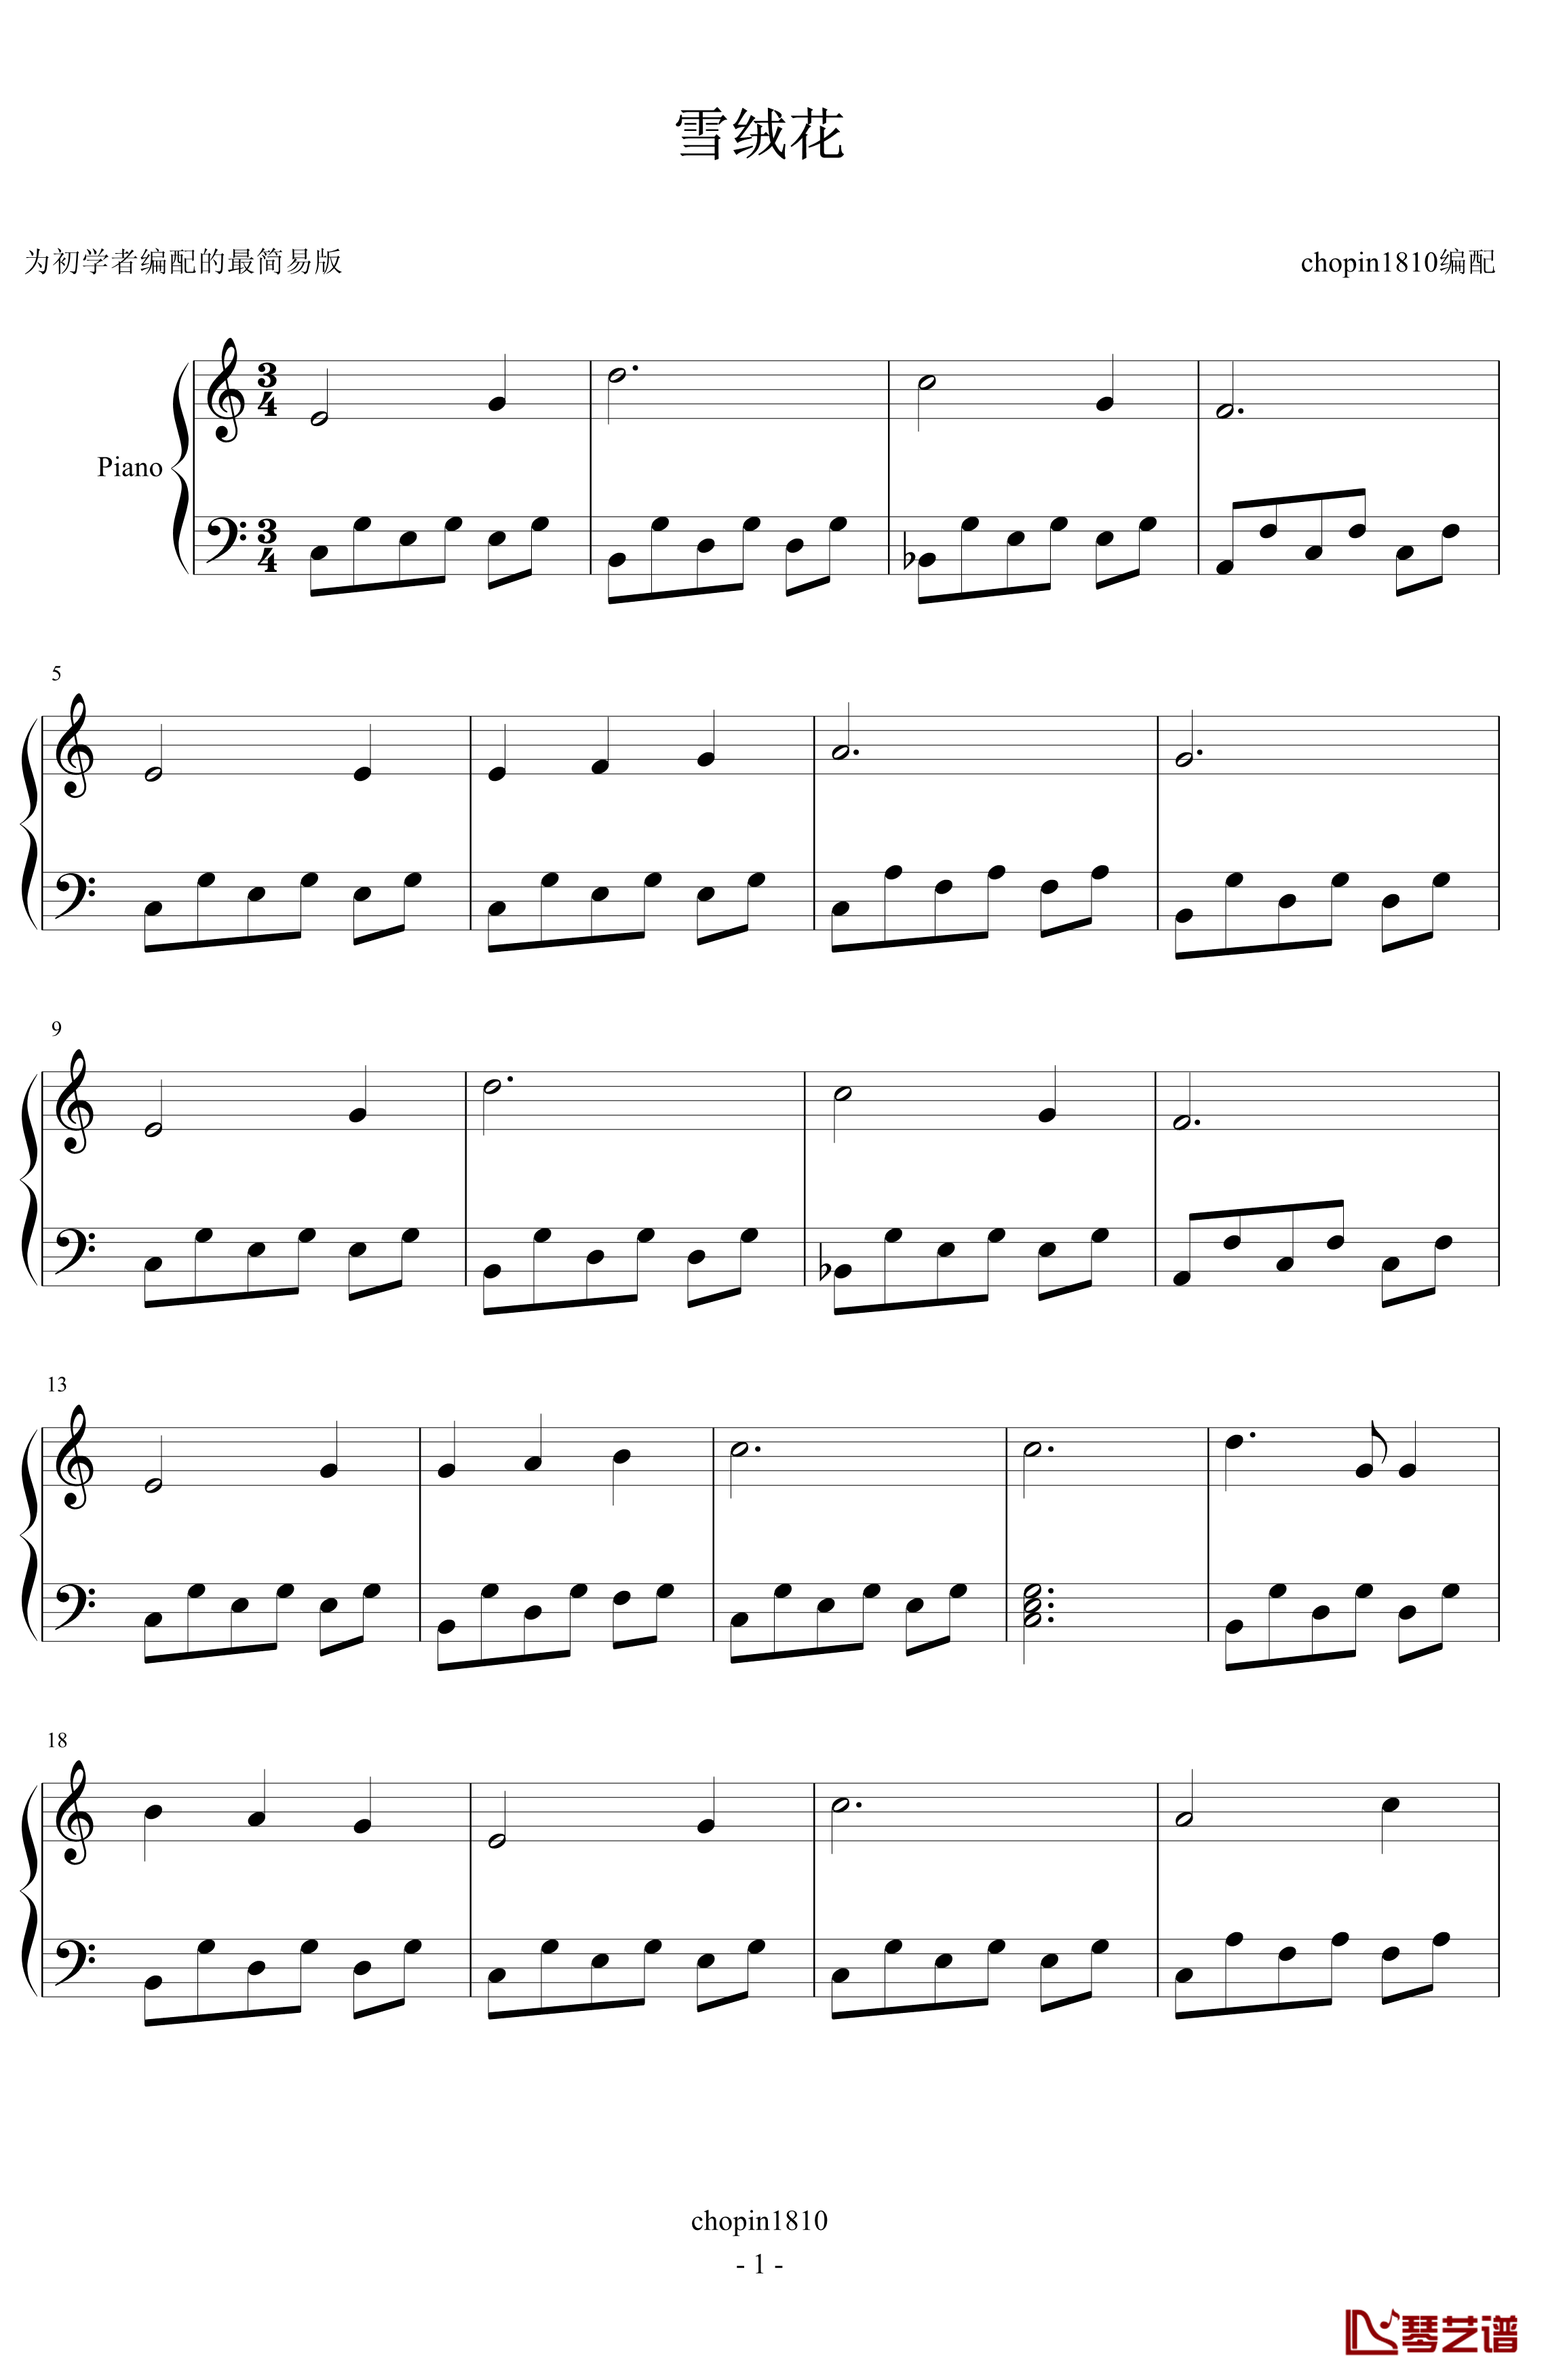 雪绒花钢琴谱-给初学者编配的最简易版-世界名曲1